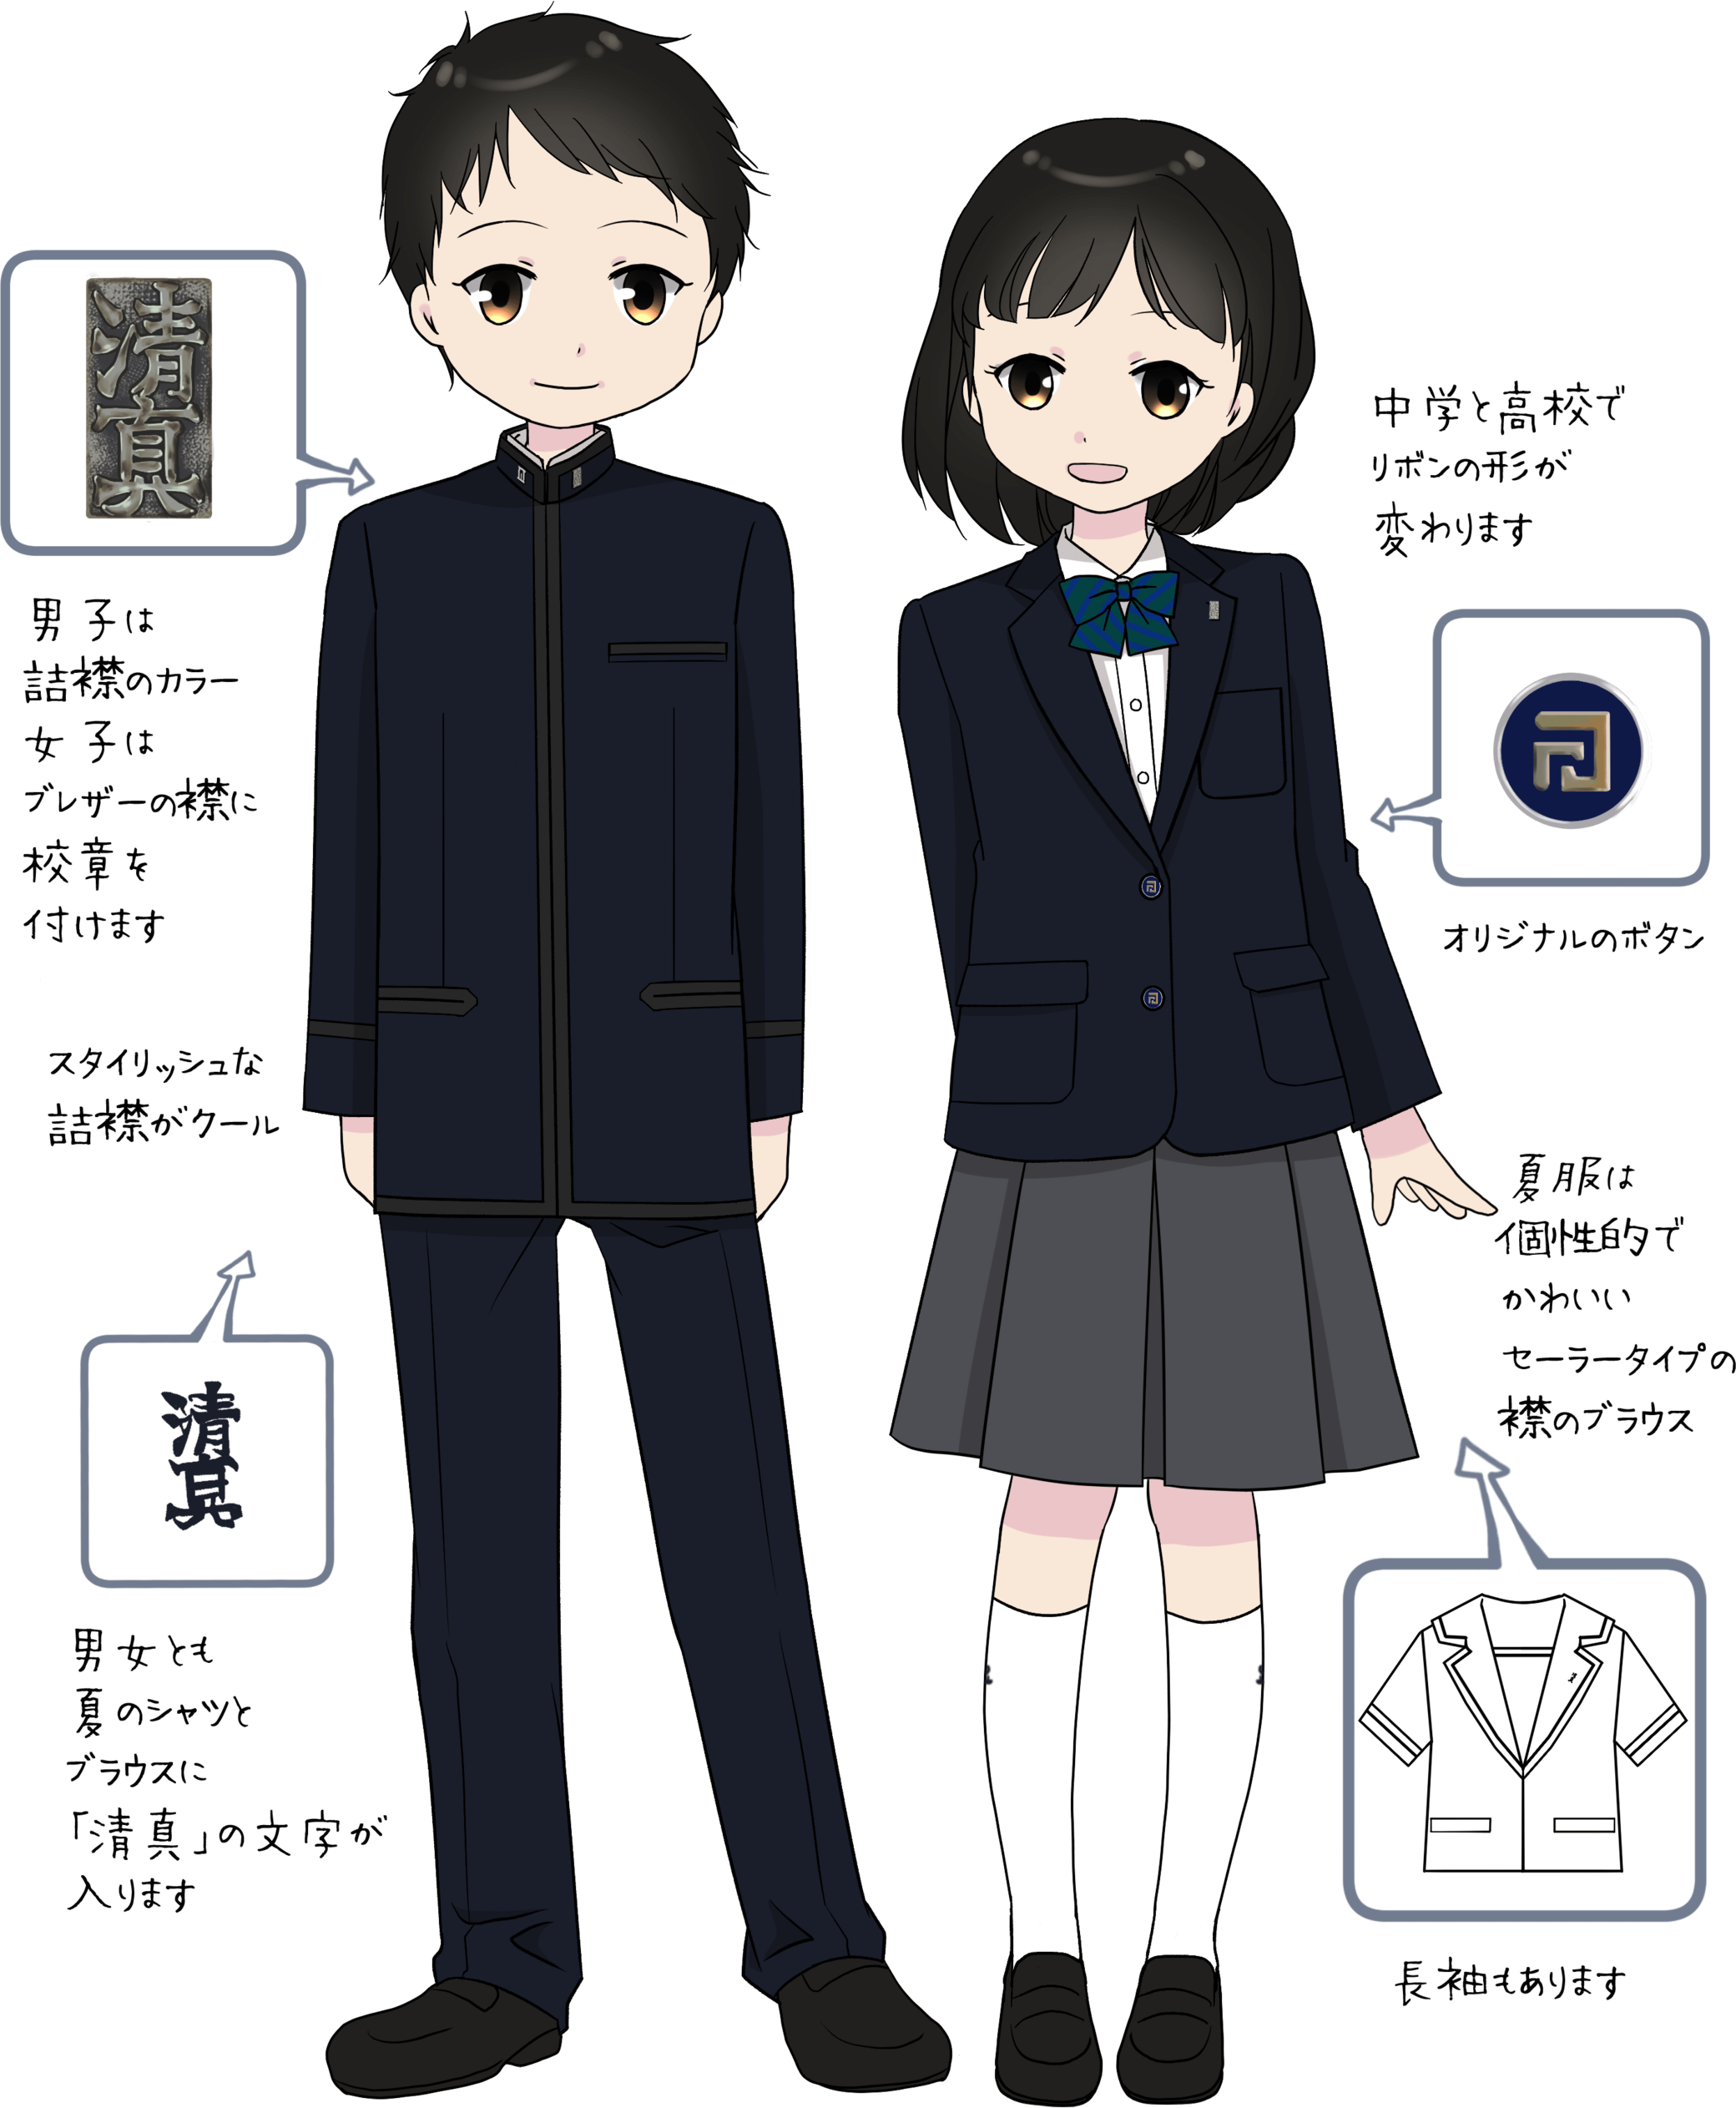 東京 高校 制服 かわいい コレクション イメージ ベスト